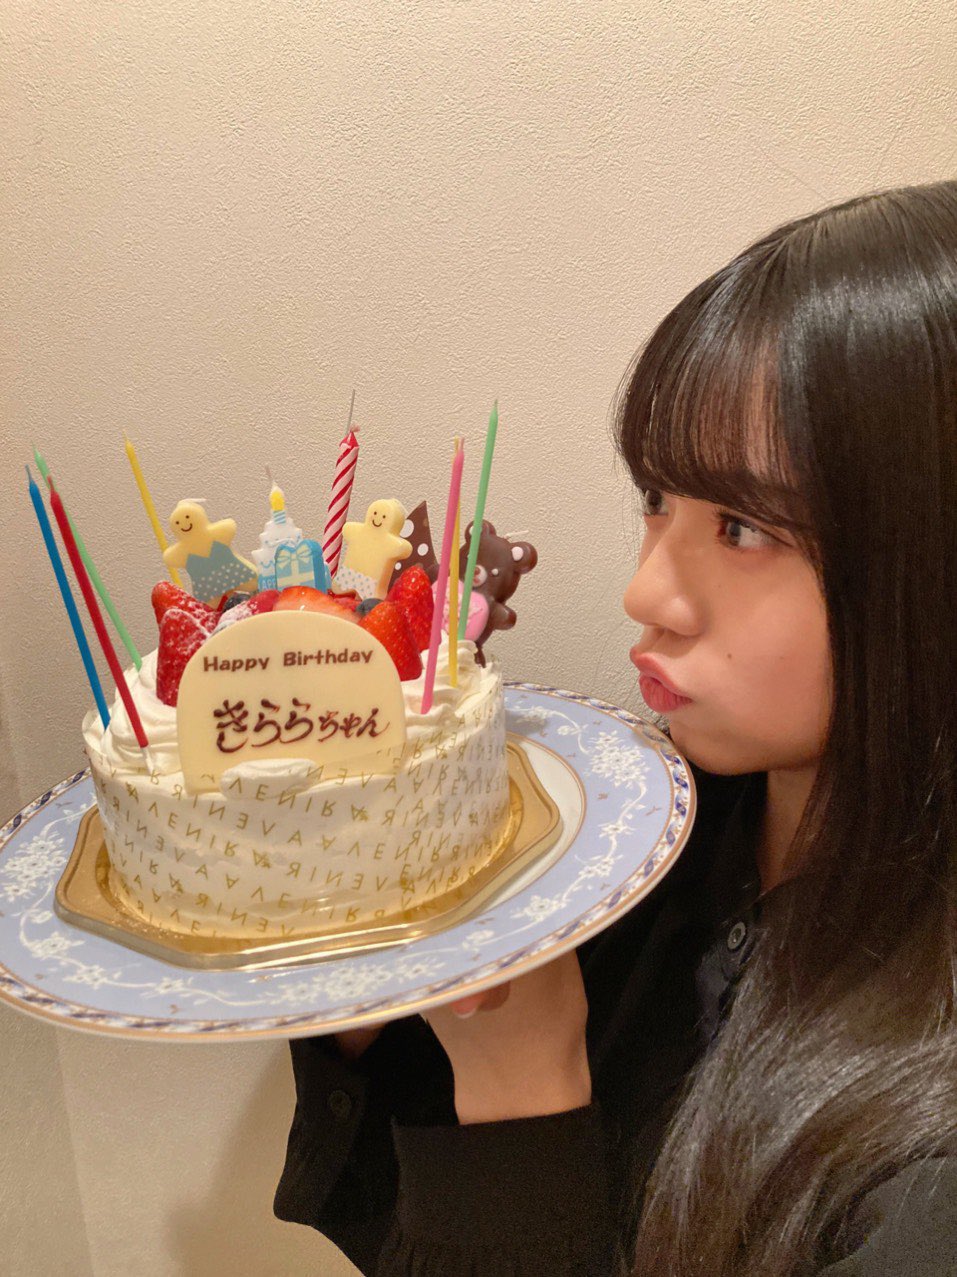 ハロプロ研修生ユニット 4月30日は米村姫良々ちゃんの17歳の誕生日 ハロプロ研修生まとめブログ